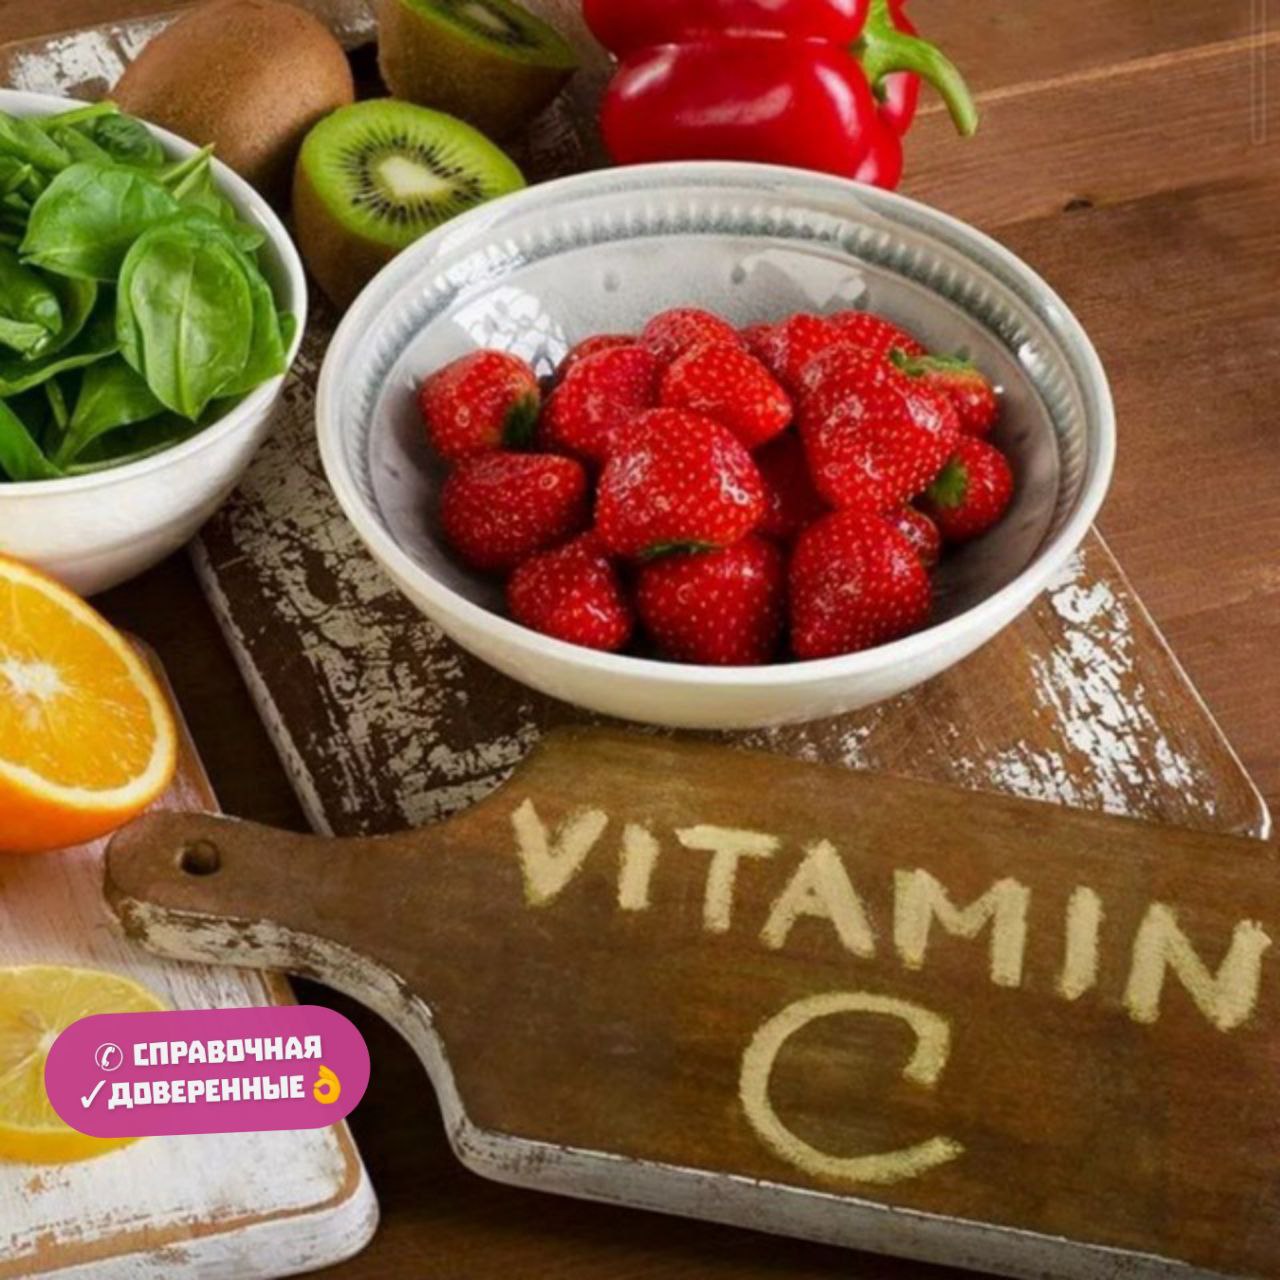 Vitamin v. Что такое витамины. Витамин c. Витамины в фруктах. Витан.